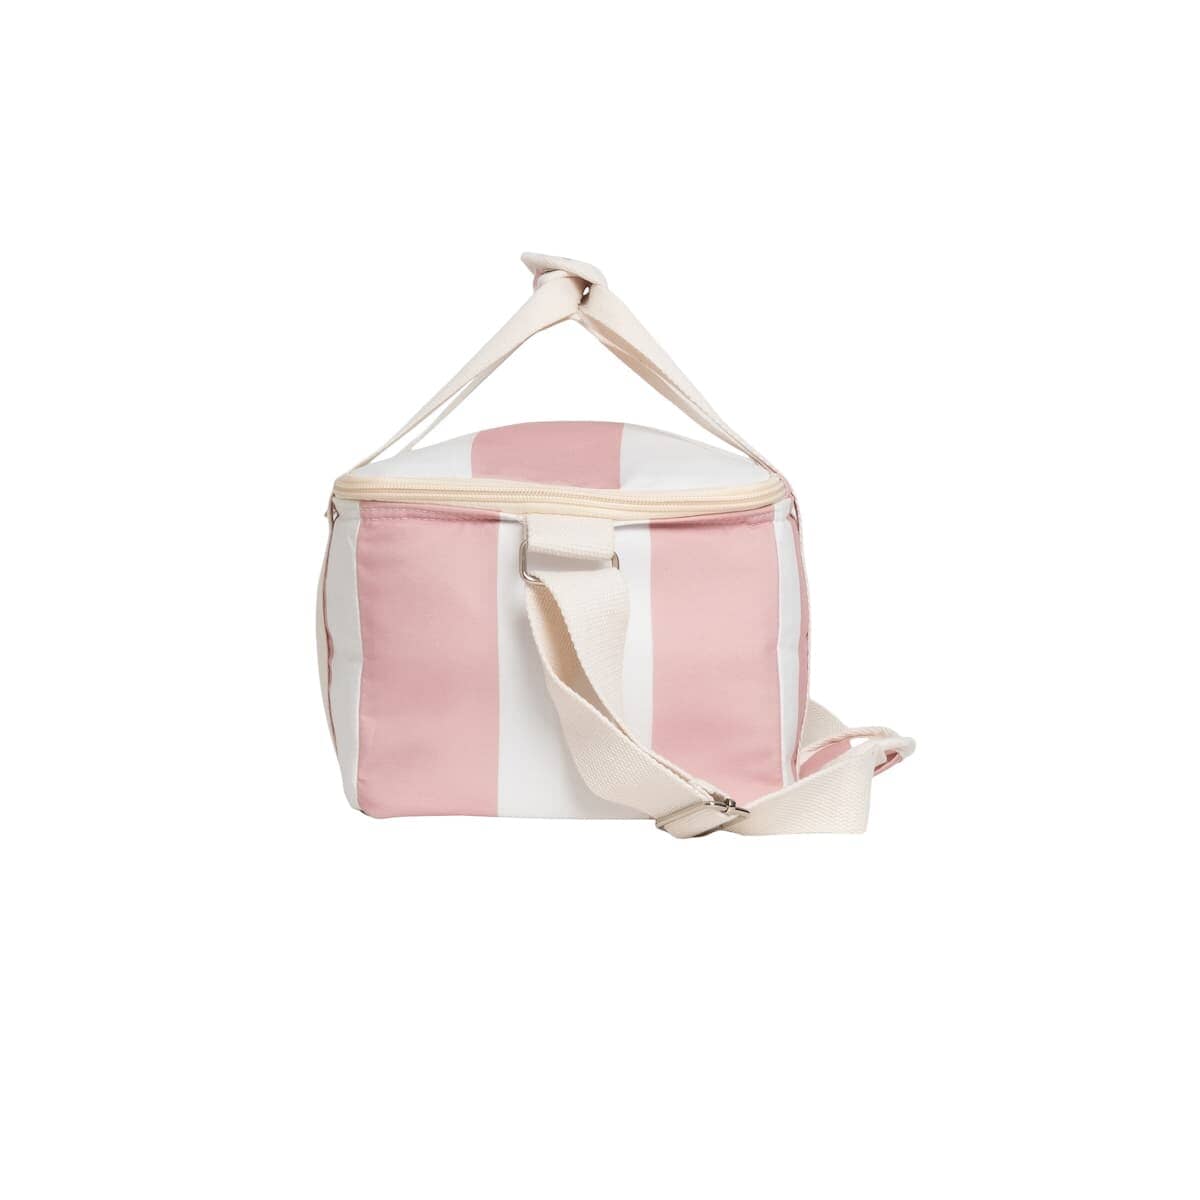 studio image of side of pink holiday cooler bag